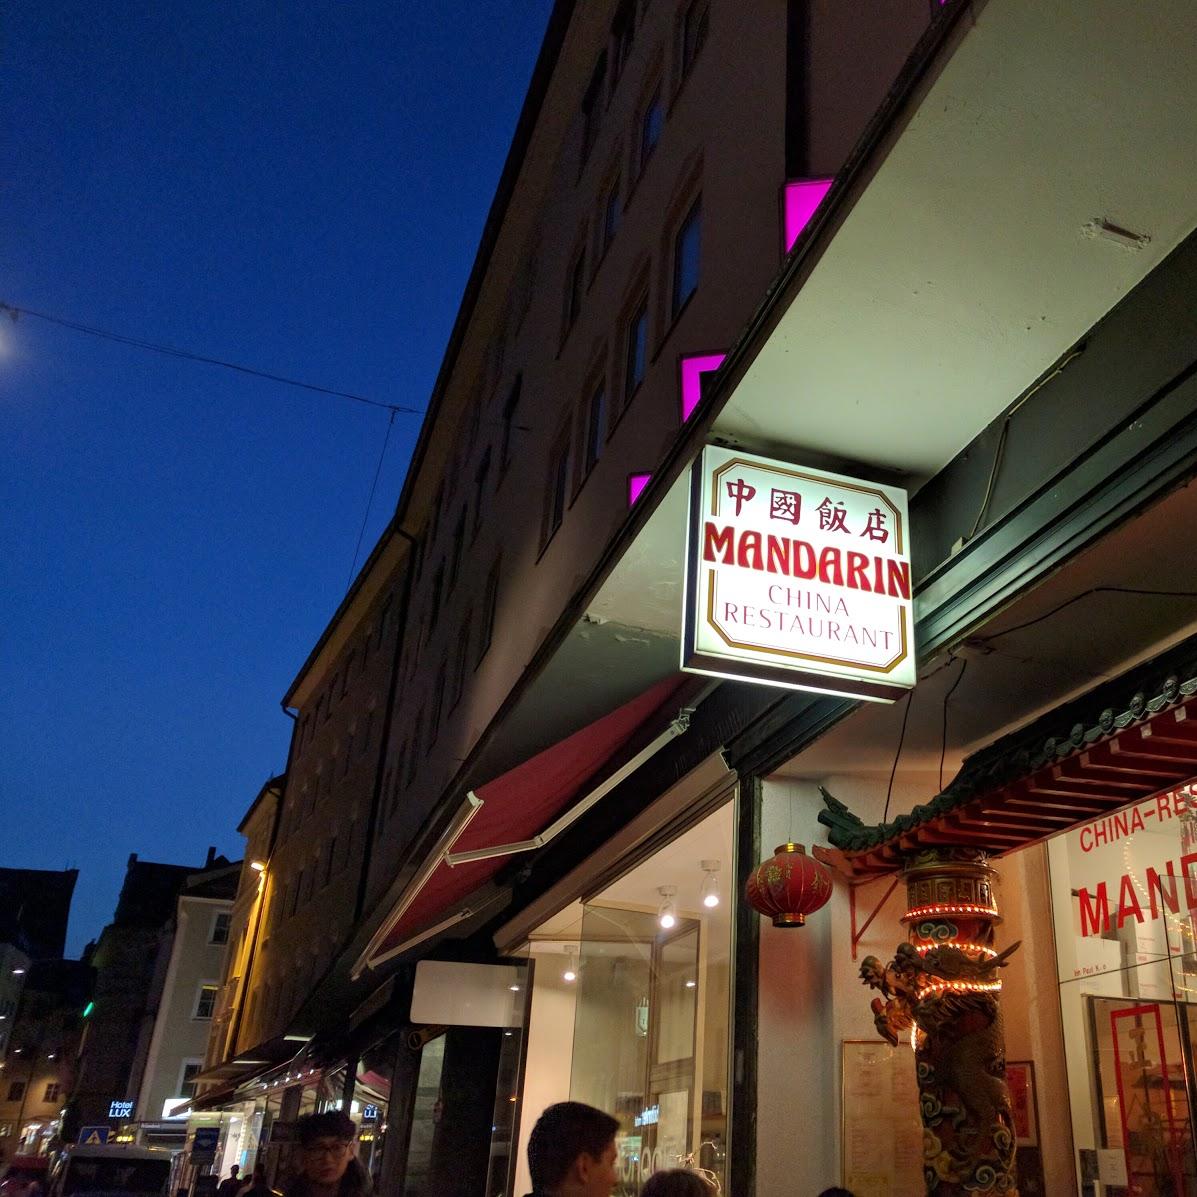 Restaurant "China-Restaurant Mandarin" in München